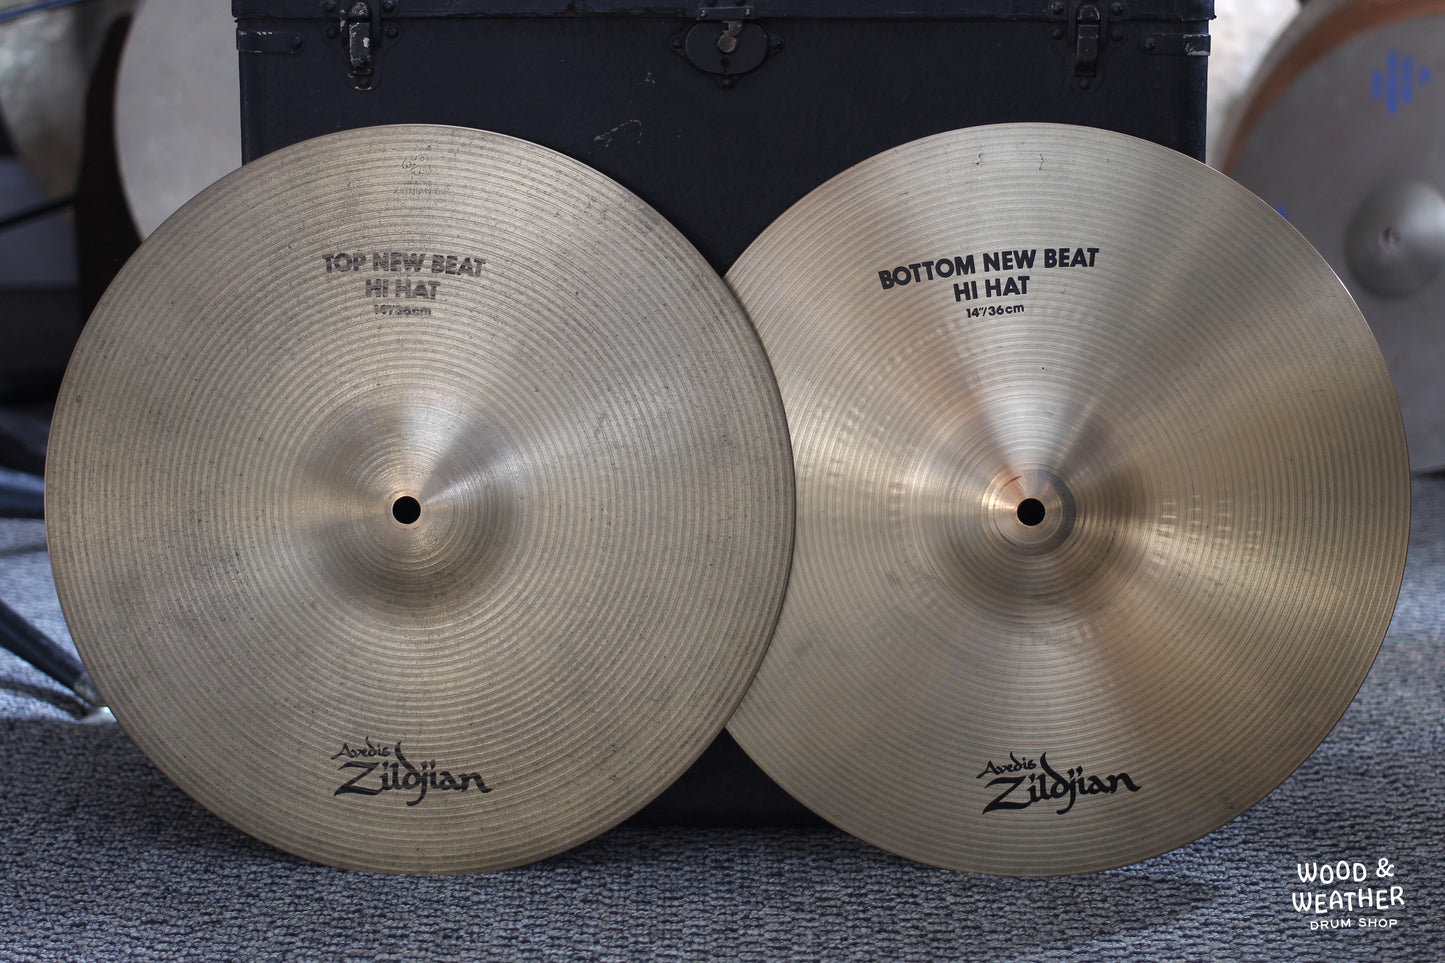 1996 Zildjian 14" A New Beat Hi-Hat Cymbals 1055/1420g